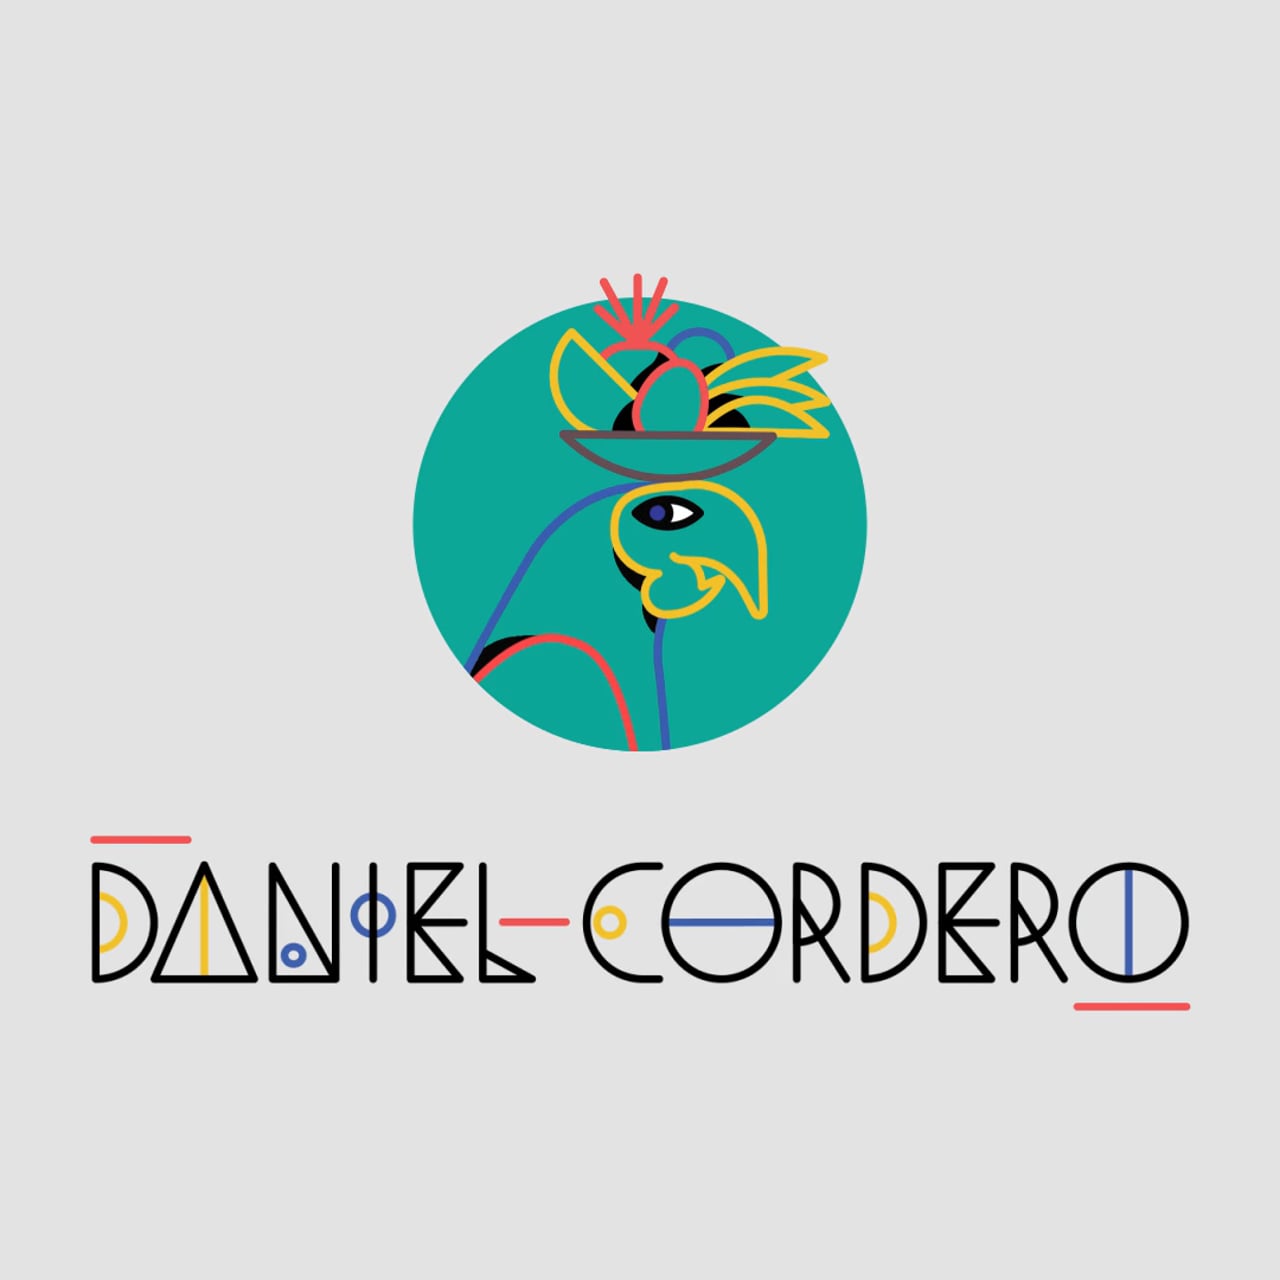 Daniel Cordero personal identity